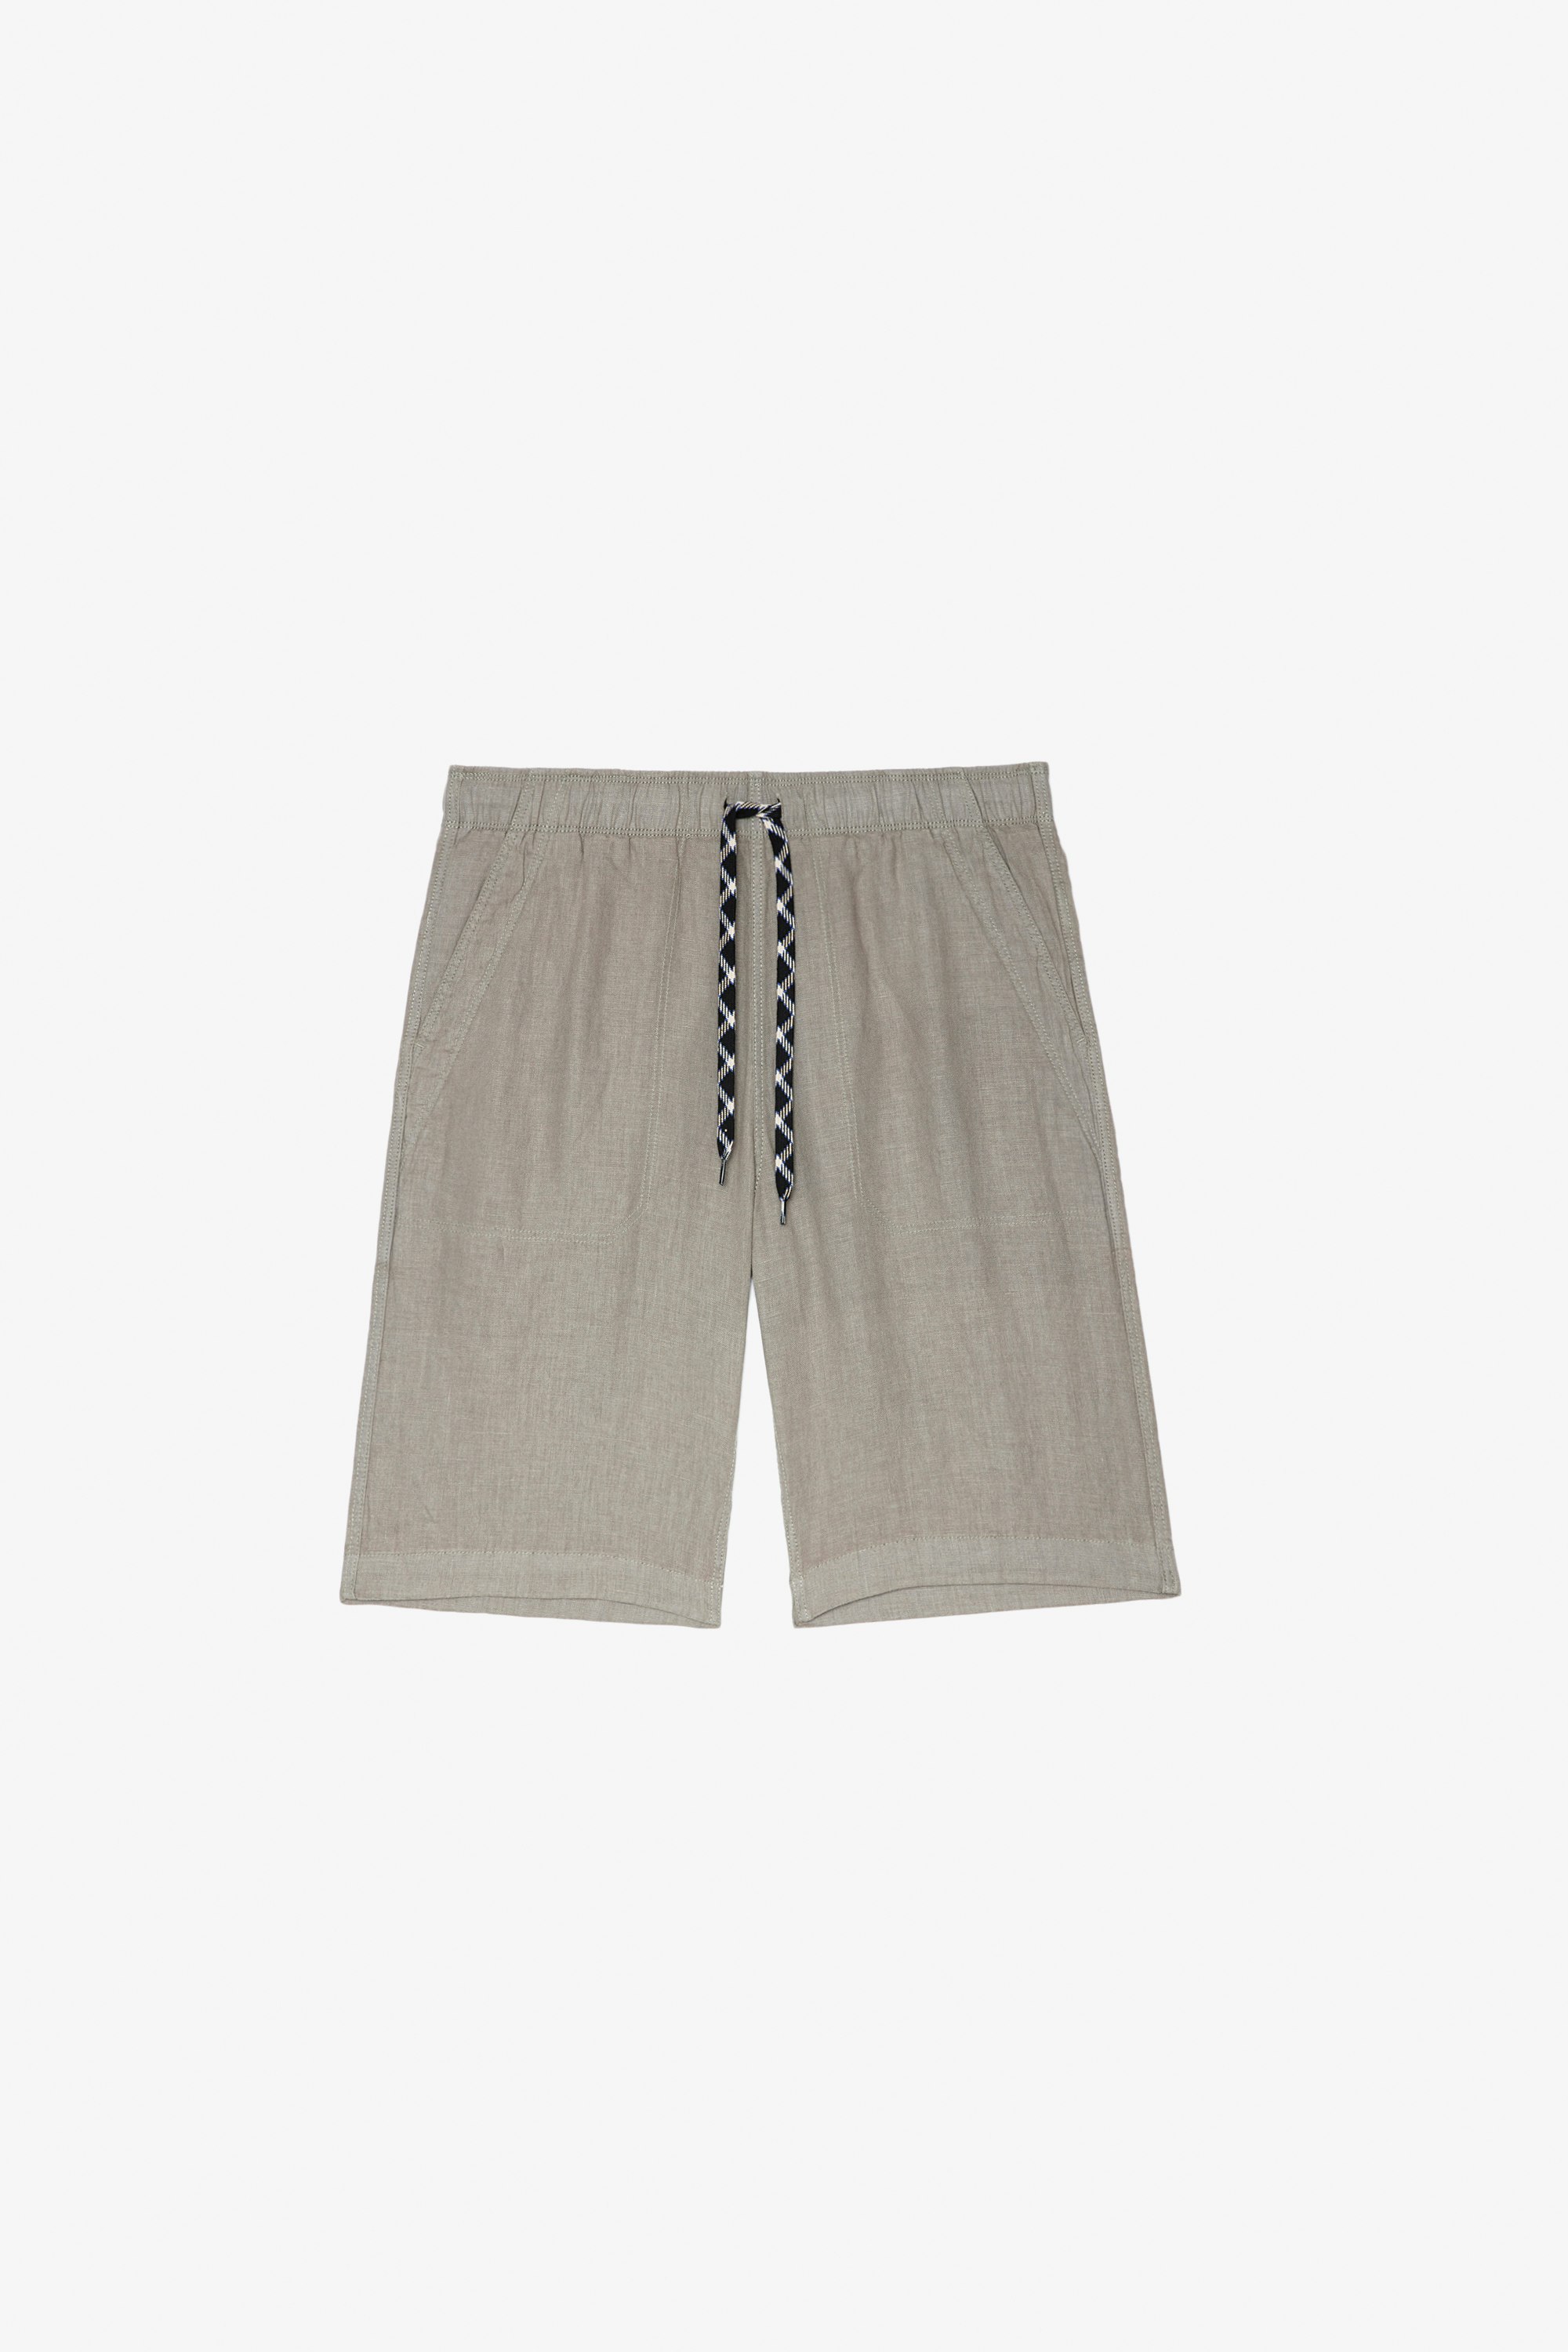 Pantalón corto Pixels Pantalón corto de lino color caqui con varios bolsillos Hombre